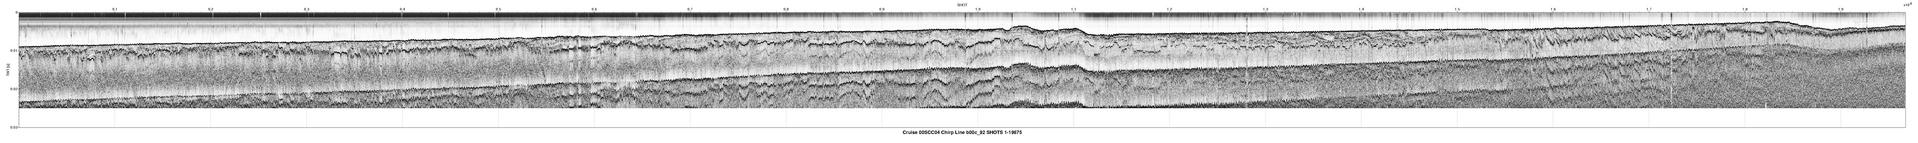 00SCC04 b00c_92 seismic profile image